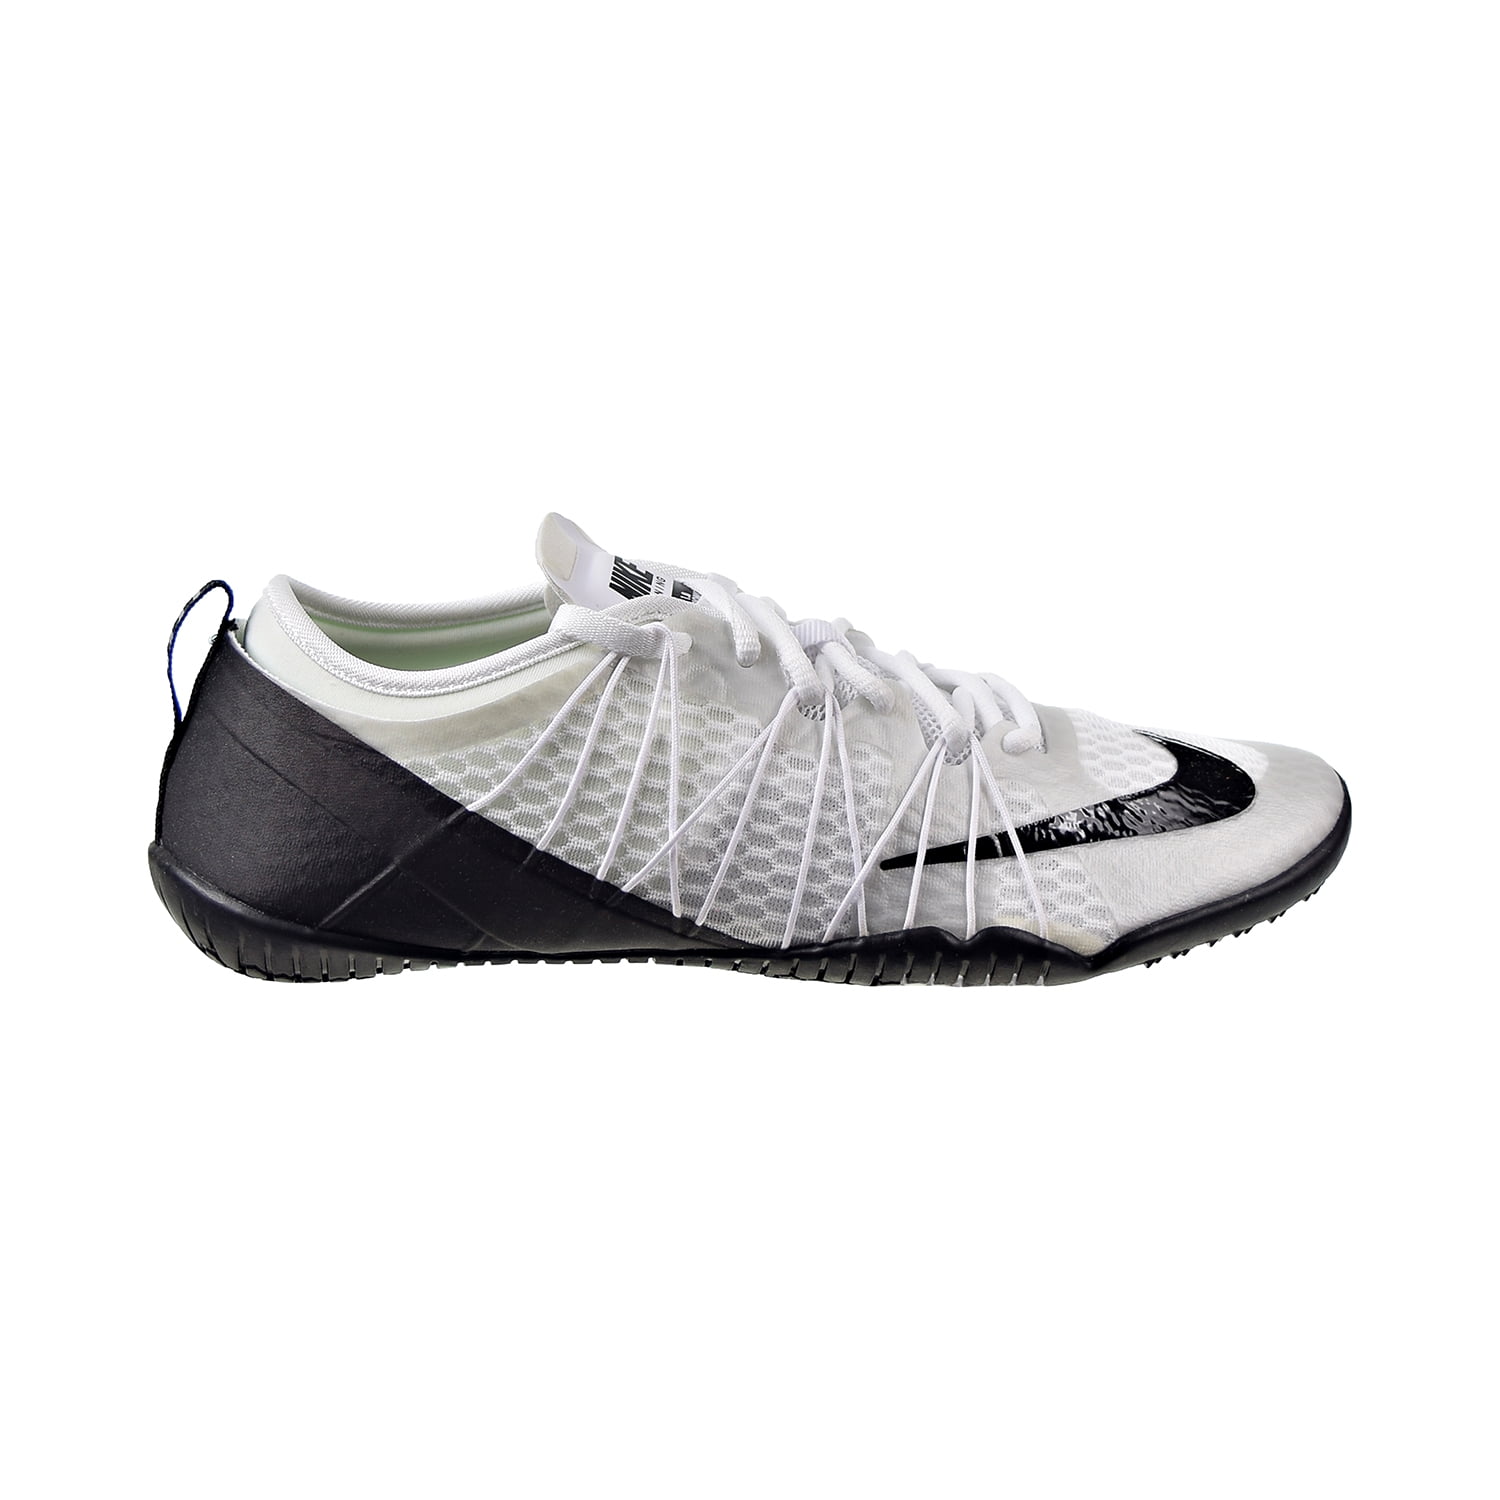 Nike - Nike Women's Free 1.0 Cross Bionic 2 Running Shoes White-Black  718841-100 - Walmart.com - Walmart.com